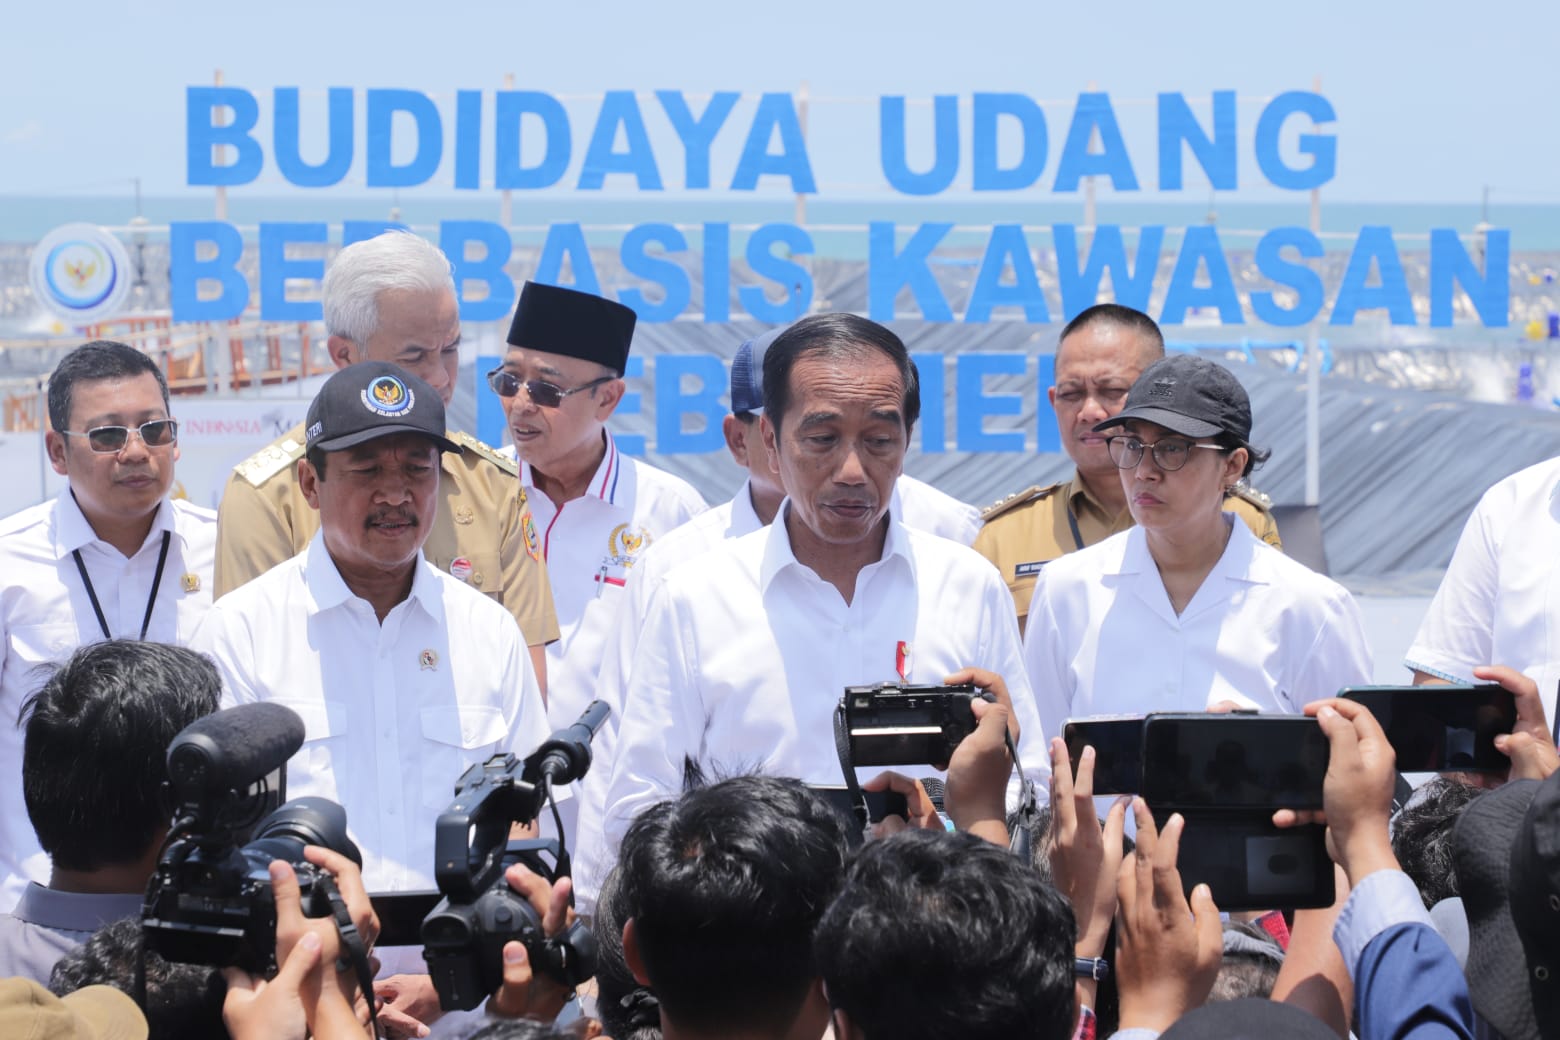 Alhamdulillah, Bapak Presiden @jokowi sudah meresmikan tambak Budidaya Udang Berbasis Kawasan (BUBK) di Kebumen